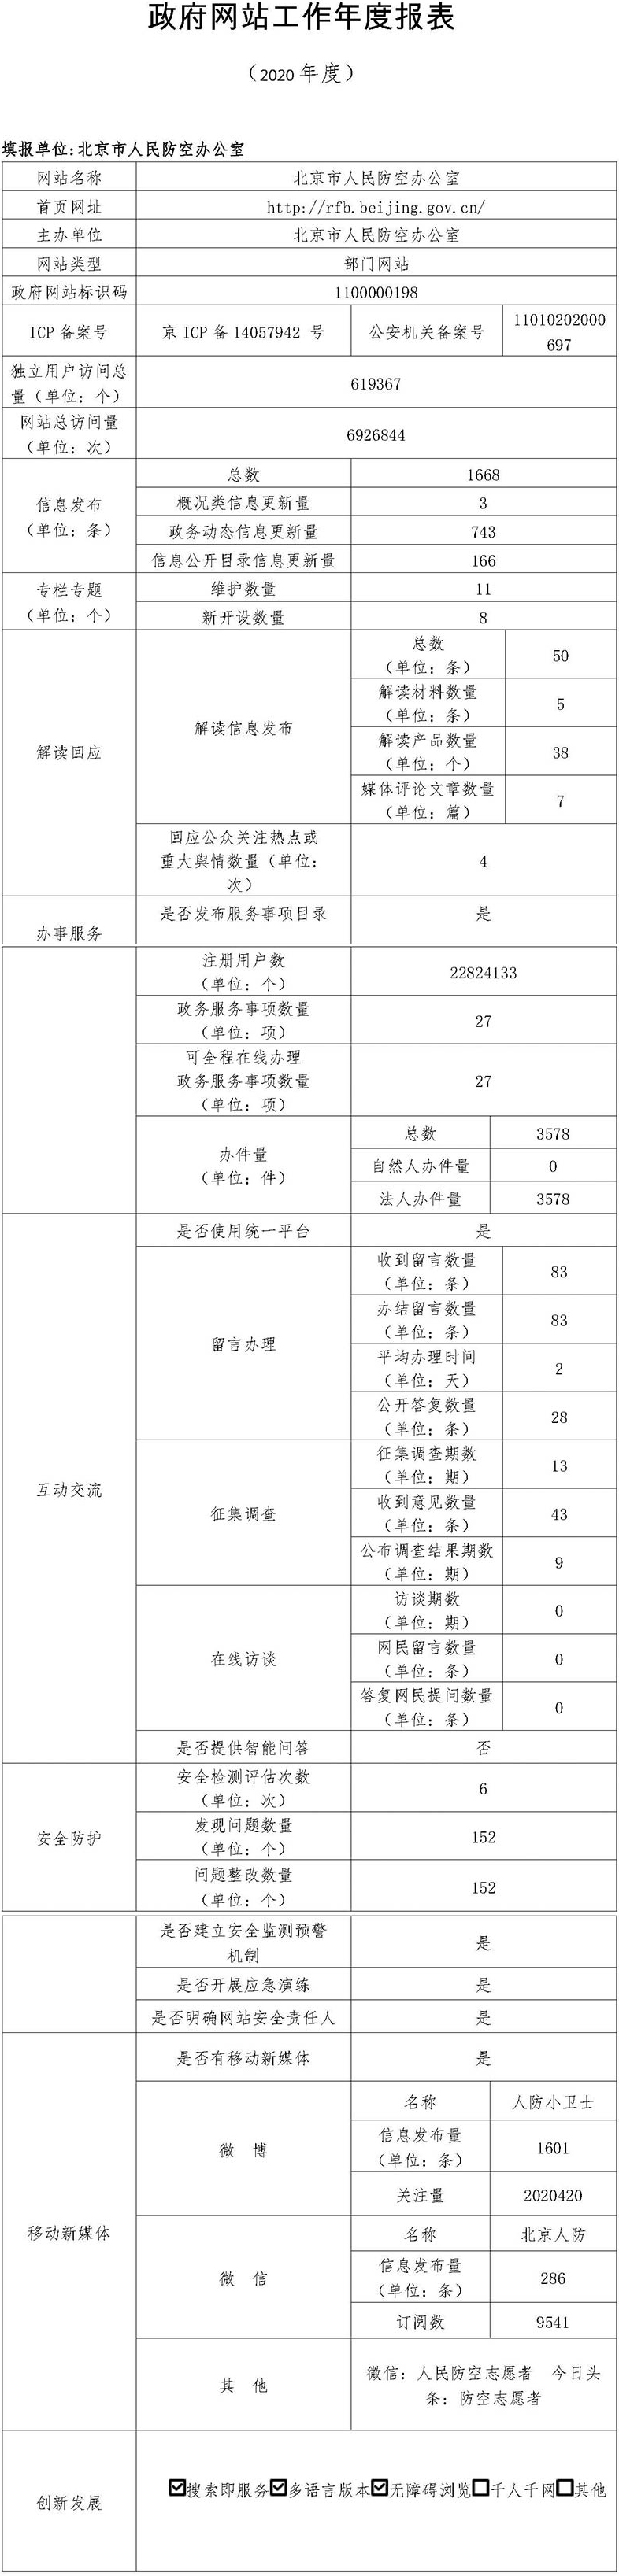 北京市人民防空辦公室2020年政府網站年度工作報表